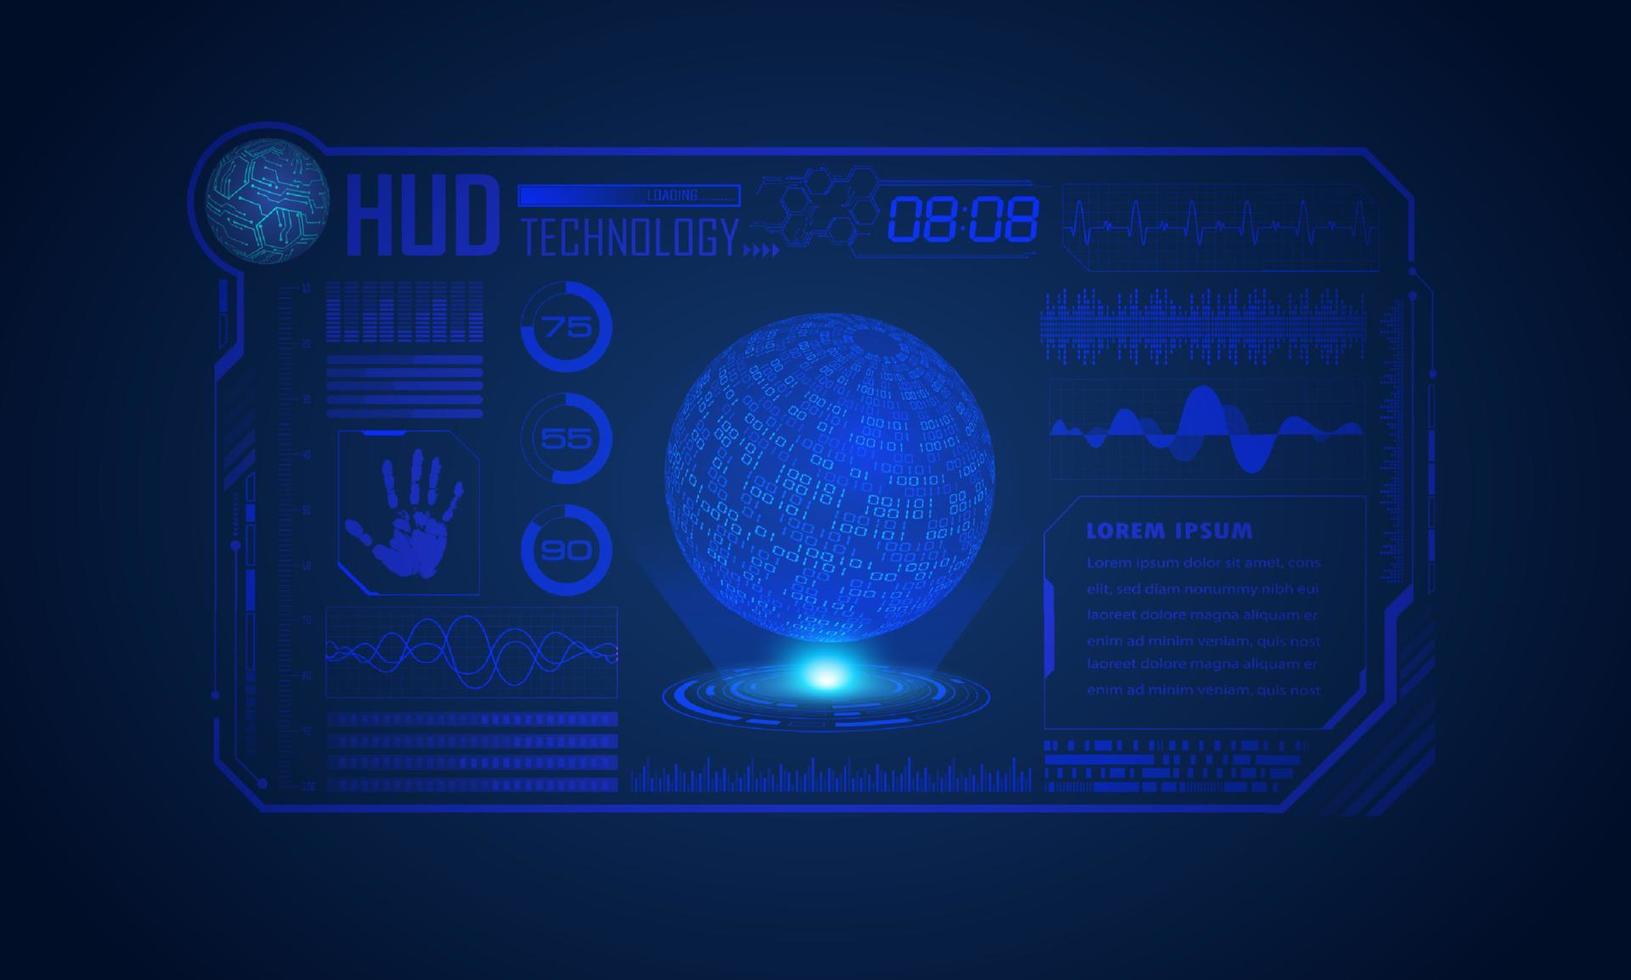 fundo de tela de tecnologia hud moderna com globo azul vetor